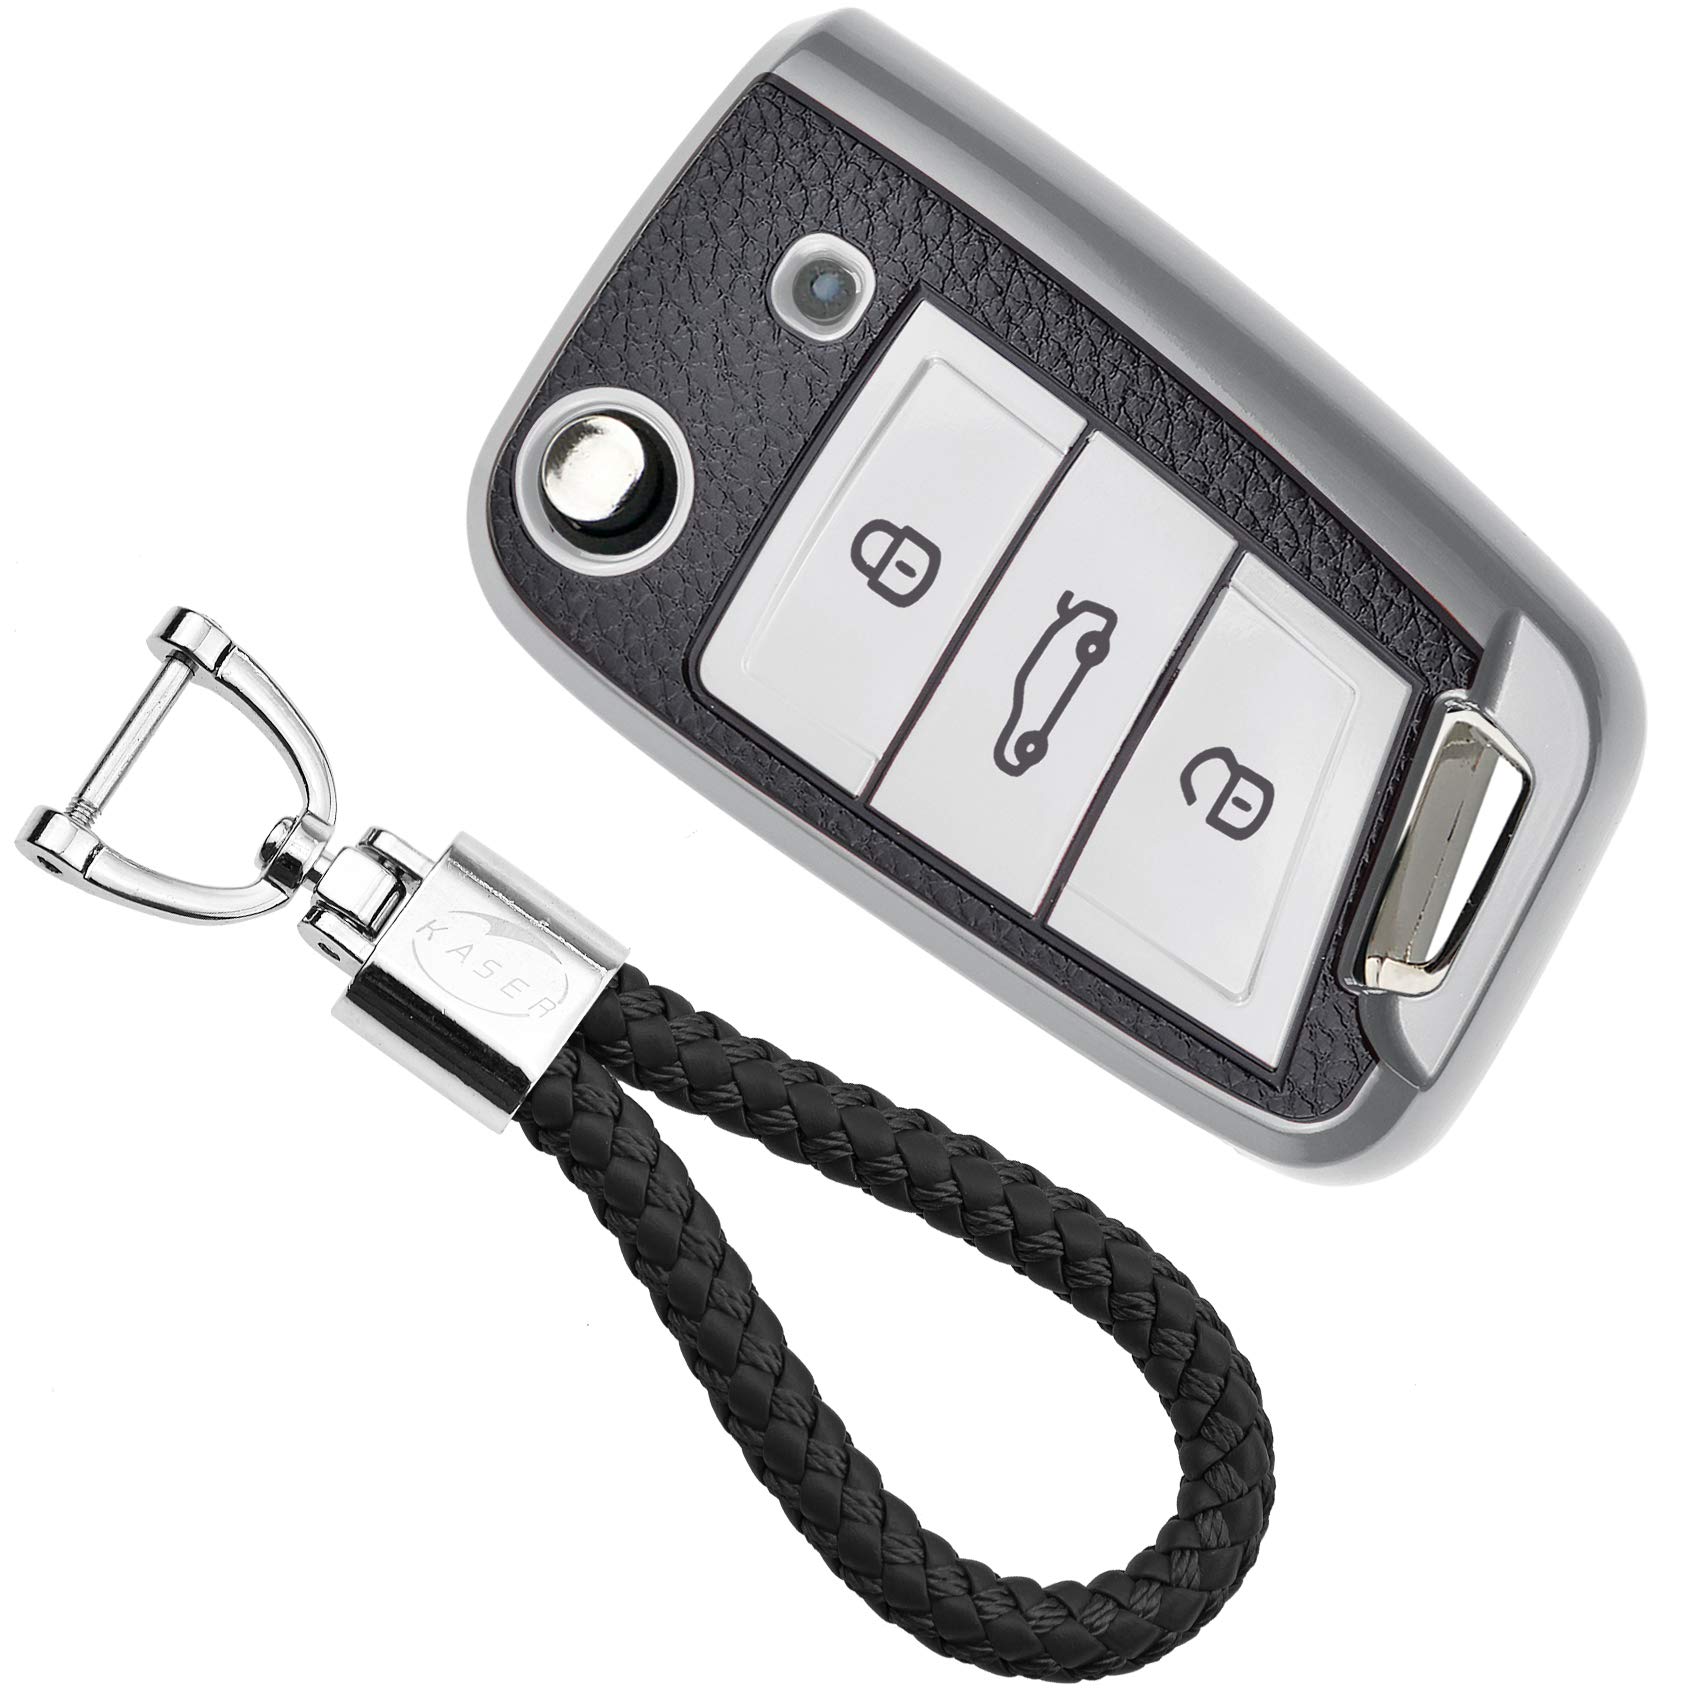 KASER Autoschlüssel Hülle kompatibel für Volkswagen VW Golf 7 Seat Ibiza Leon Skoda Octavia Schlüsselanhänger Abdeckung Silikon Schutzhülle Ledereffekt (Silber) von Kaser